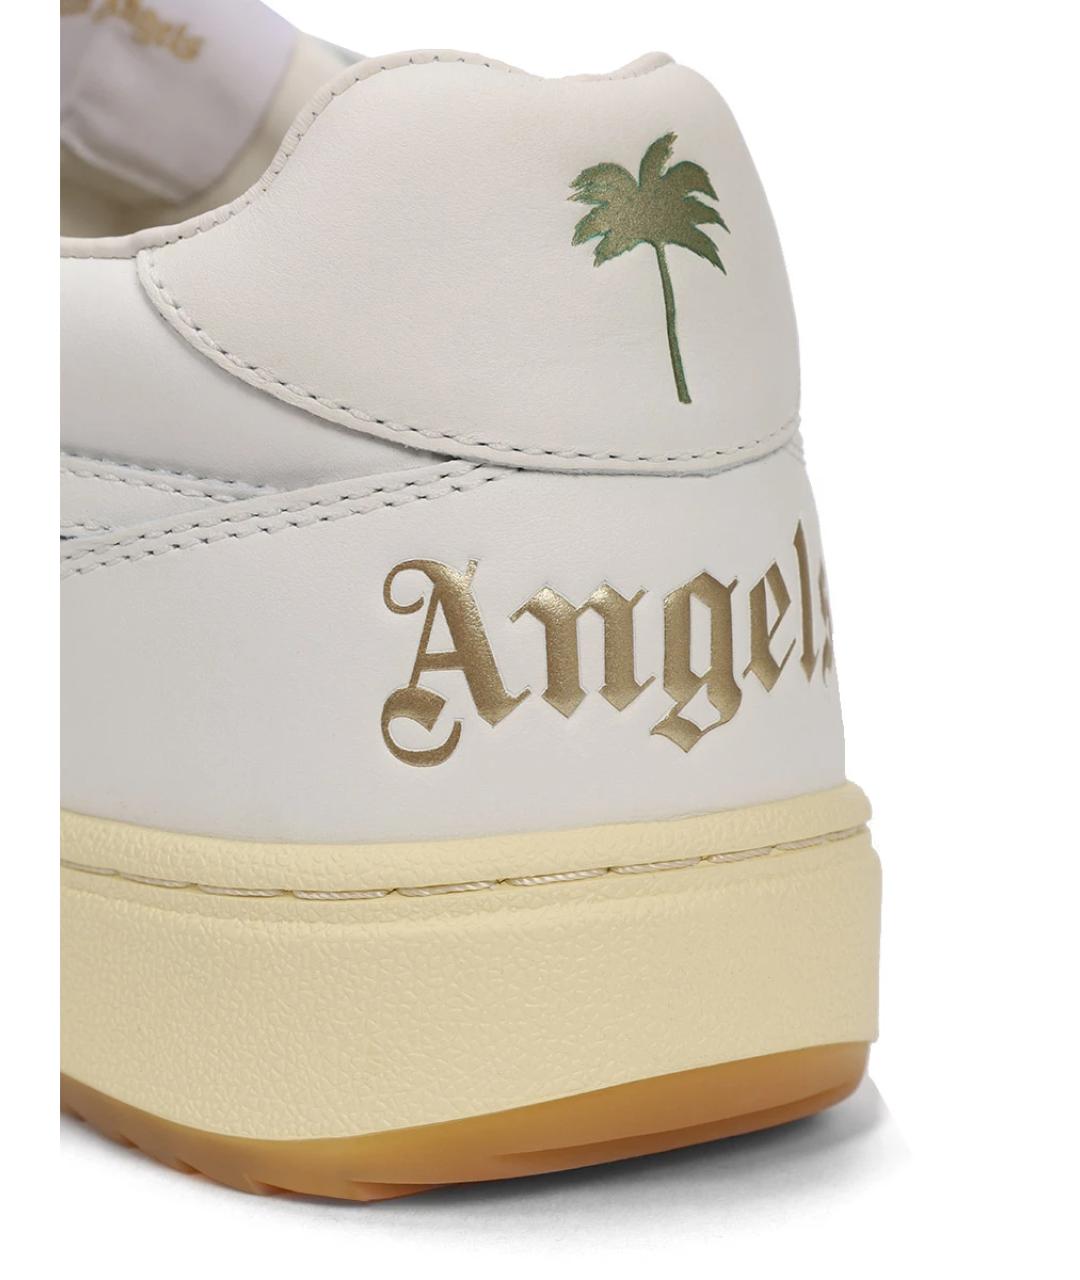 PALM ANGELS Белые низкие кроссовки / кеды, фото 5